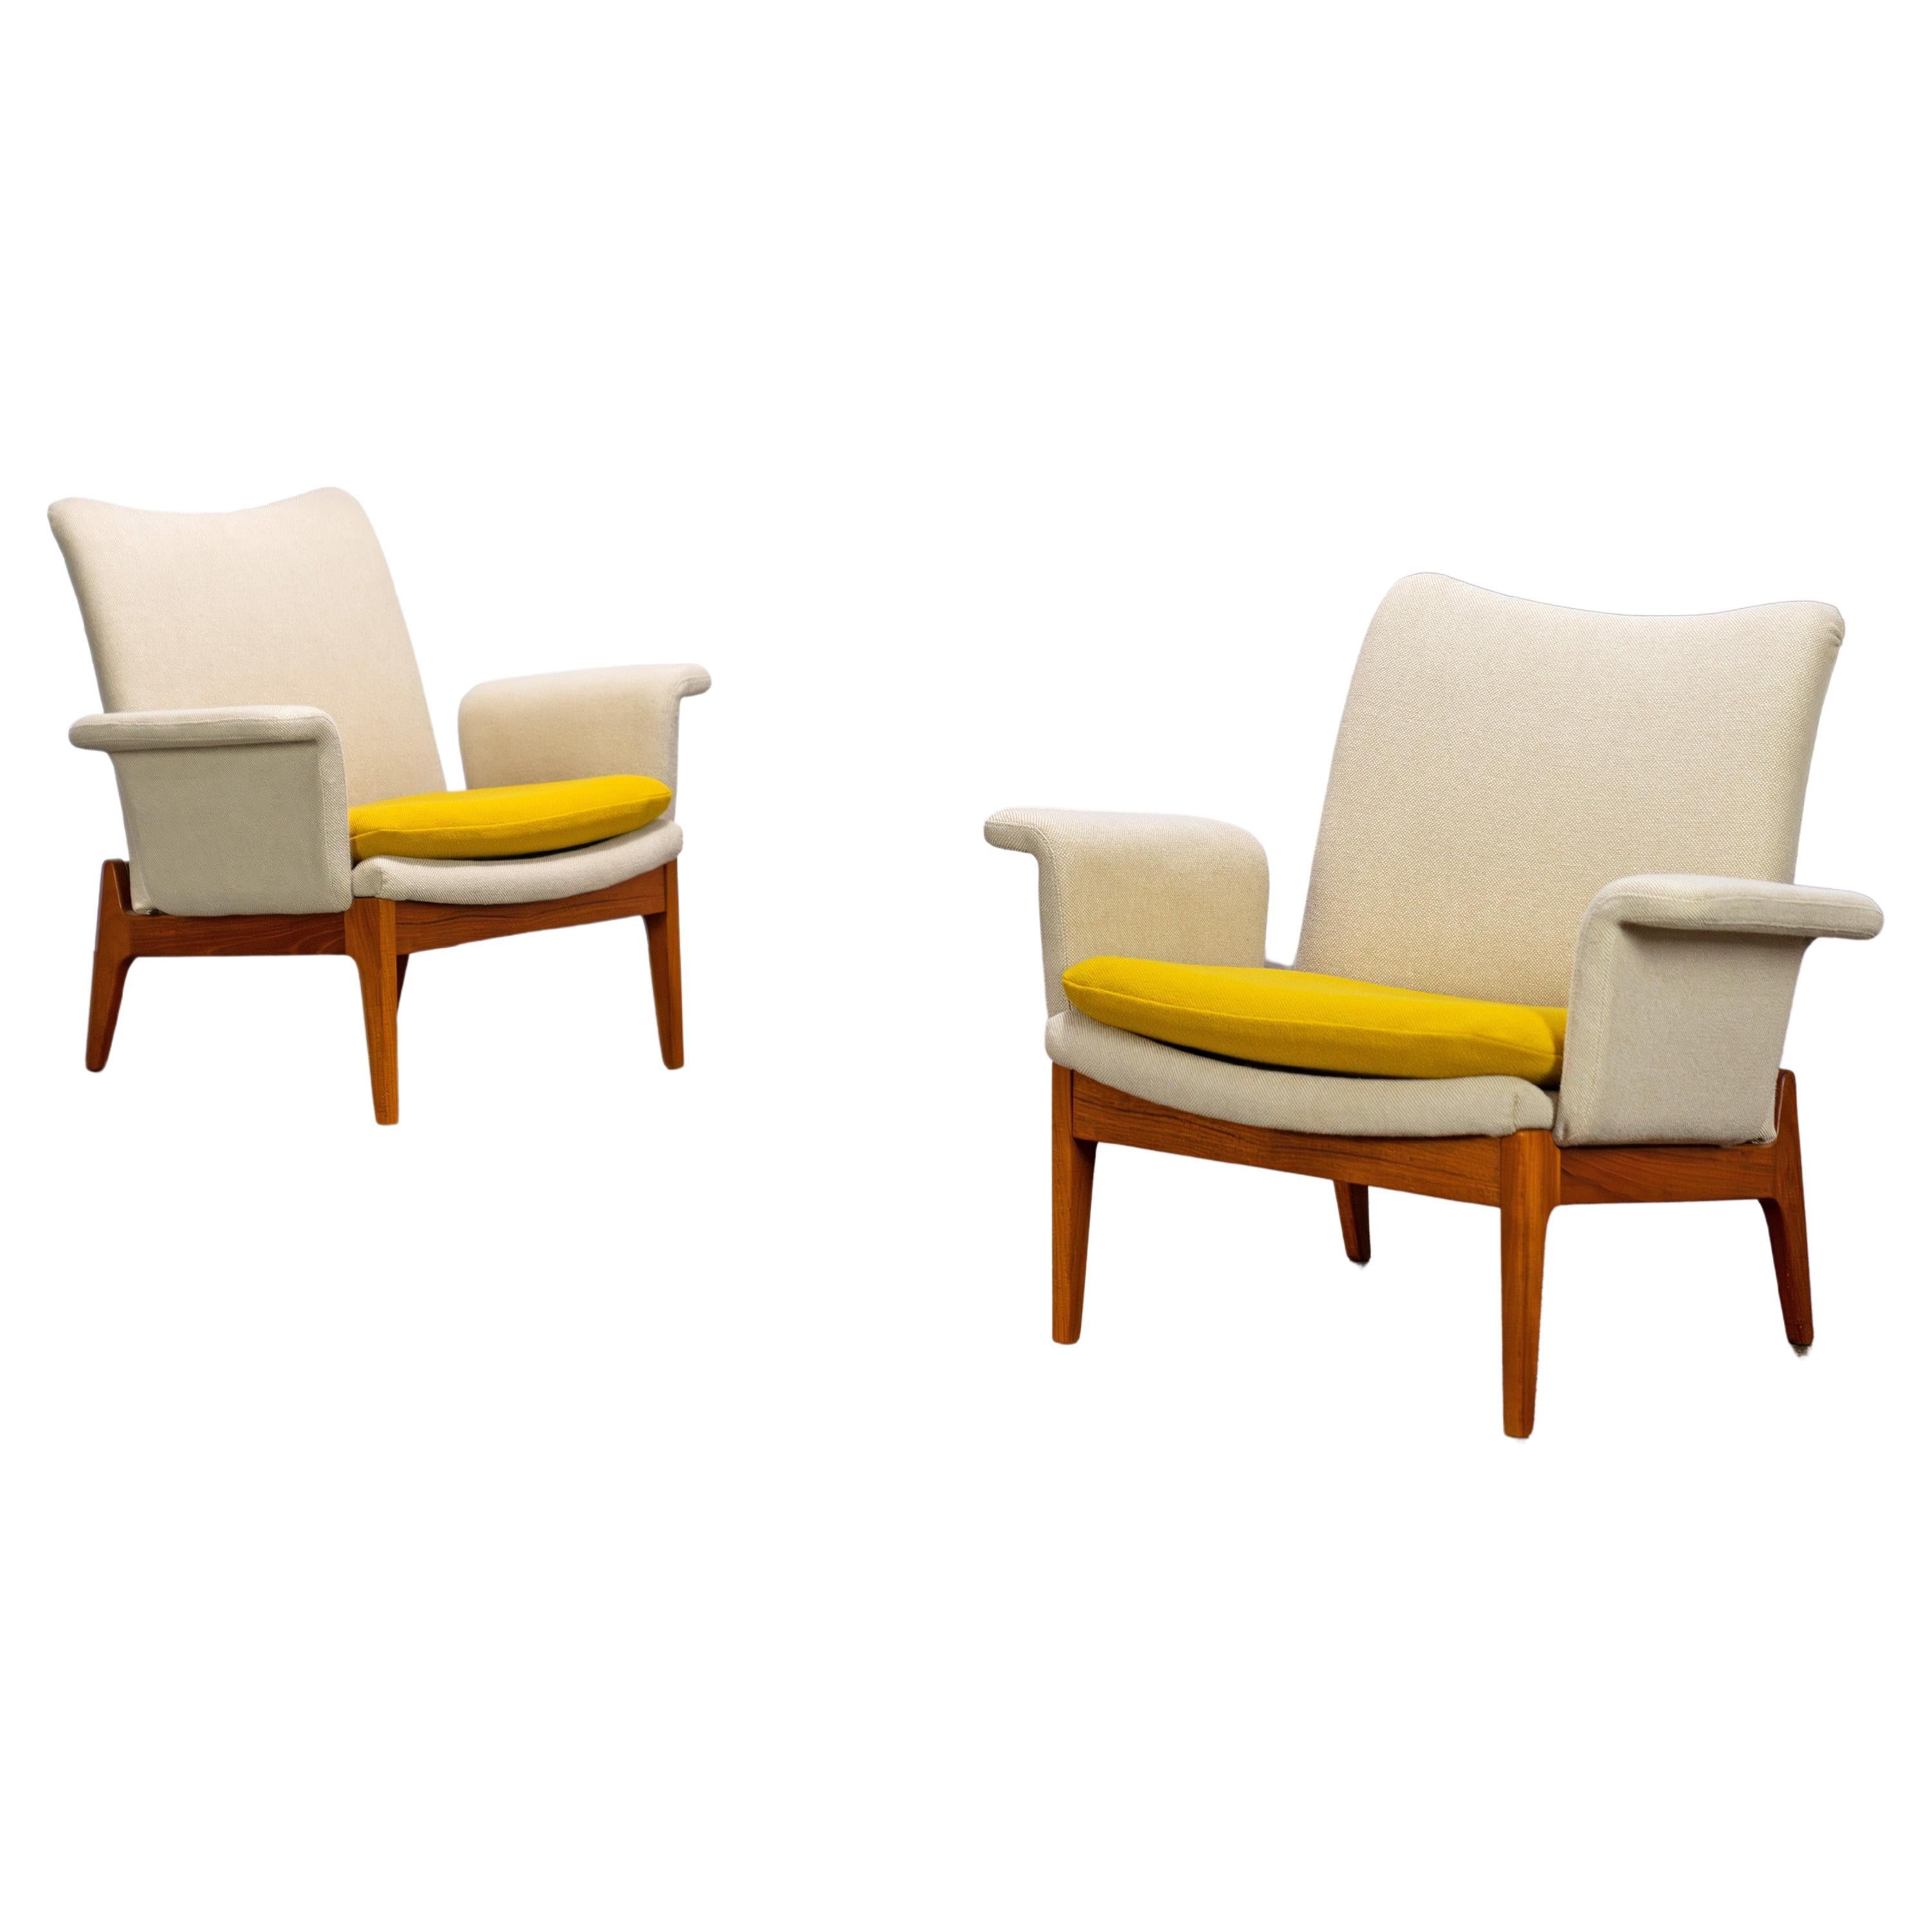 Scandinavian Easy Chairs by Finn Juhl, Mod. 112 France & Søn Denmark 60s For Sale